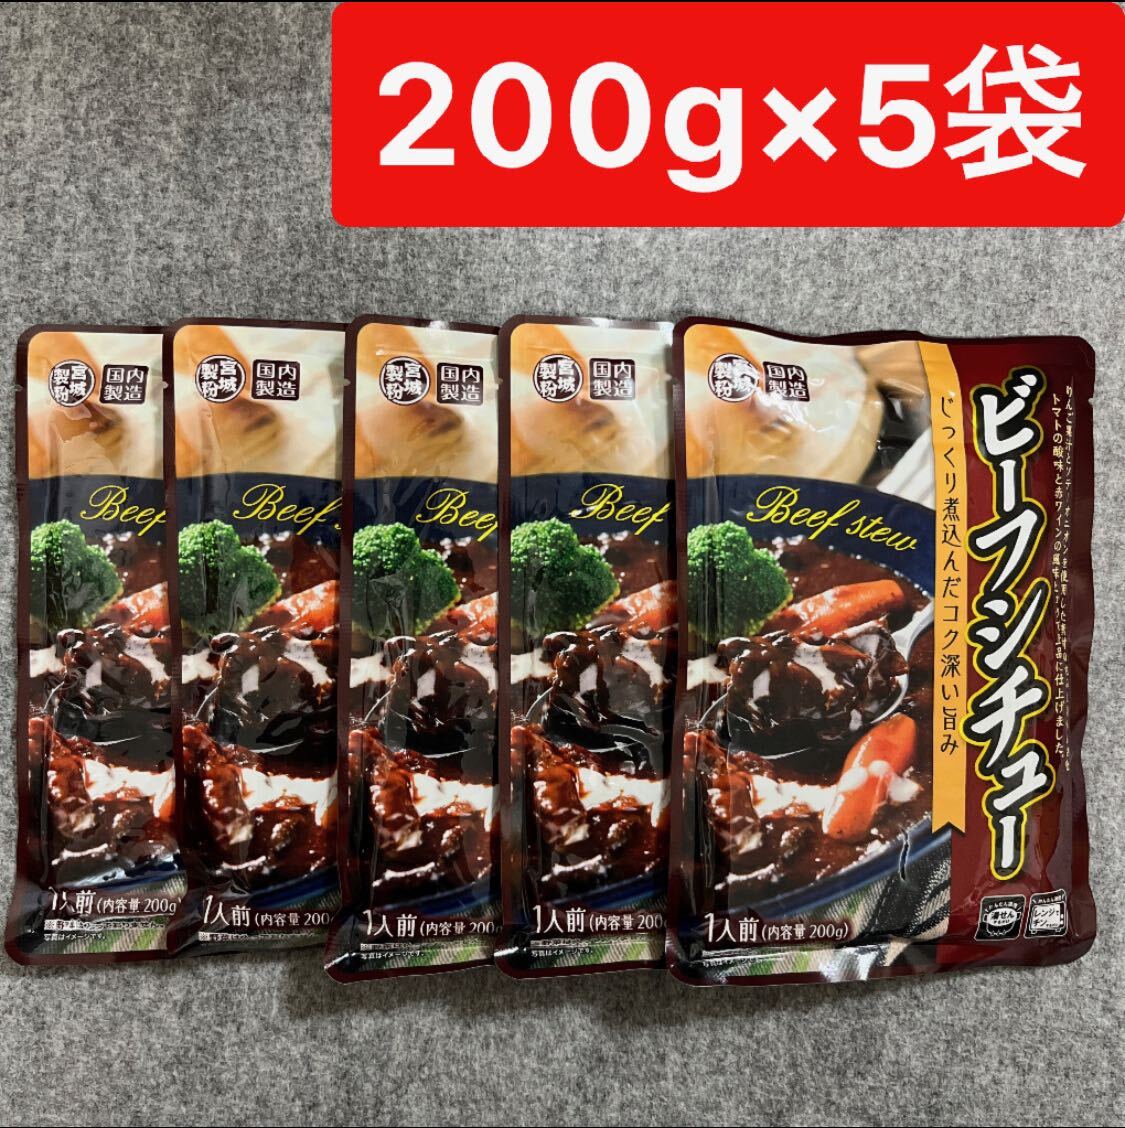  говядина айнтопф 200g×5 пакет комплект стерильная упаковка продажа комплектом Miyagi производства мука 